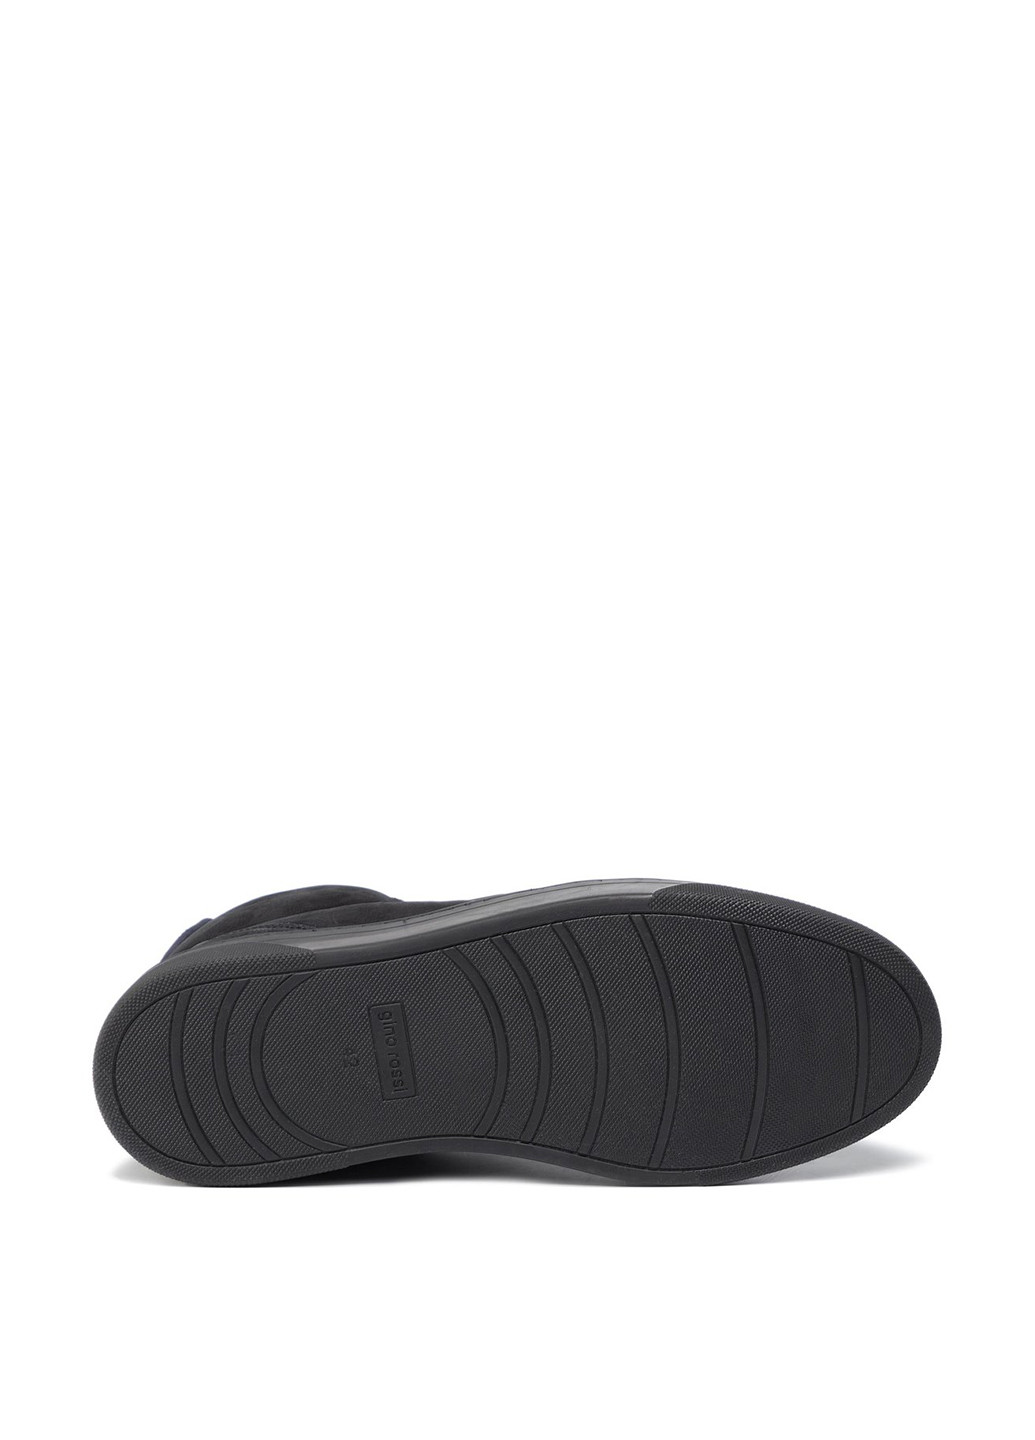 Черные осенние черевики gino rossi mi08-c652-653-01 Gino Rossi